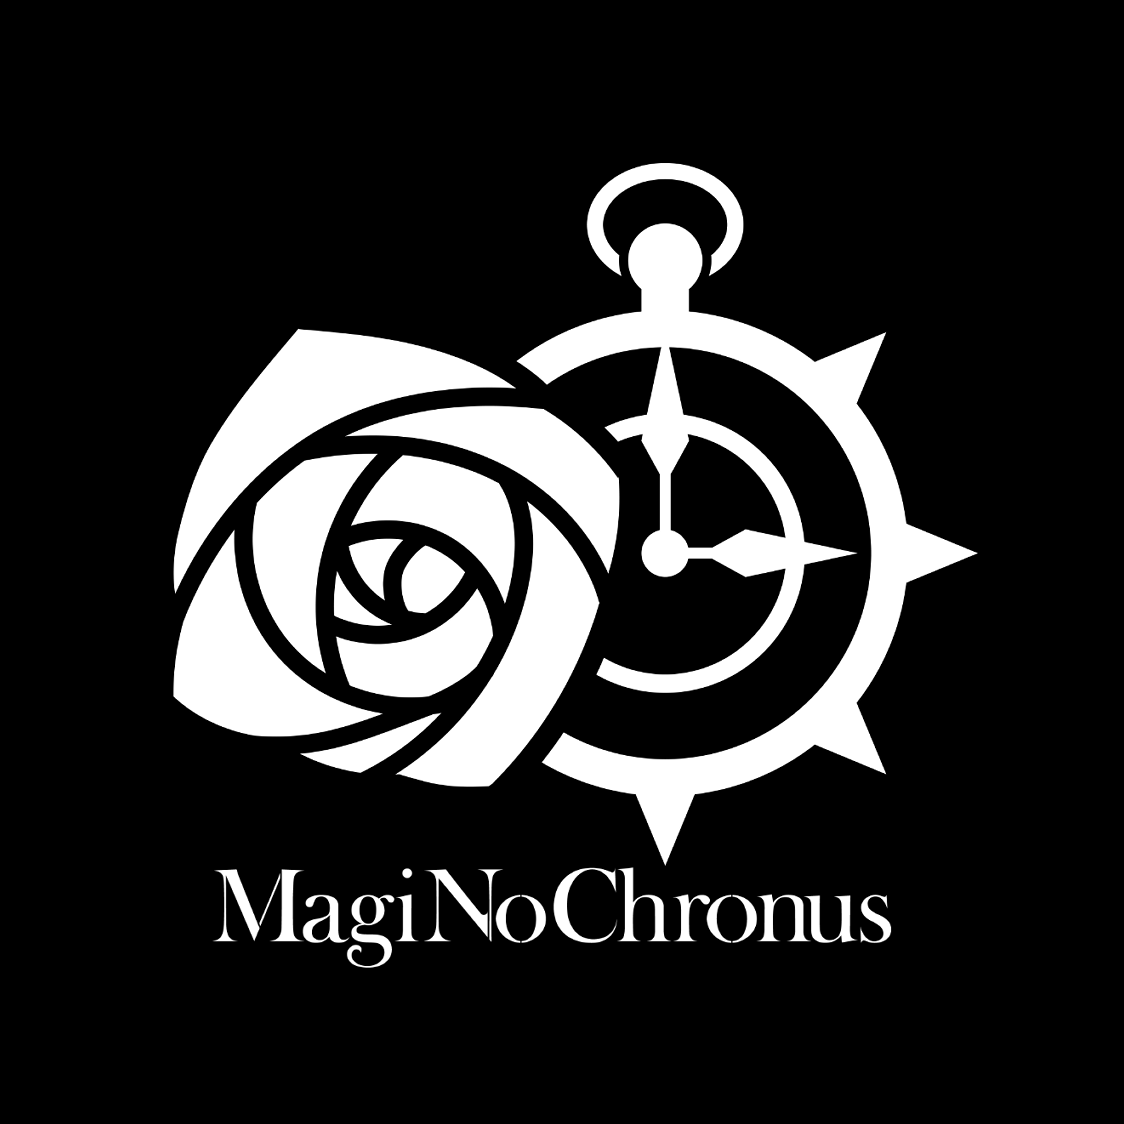 MagiNoChronus